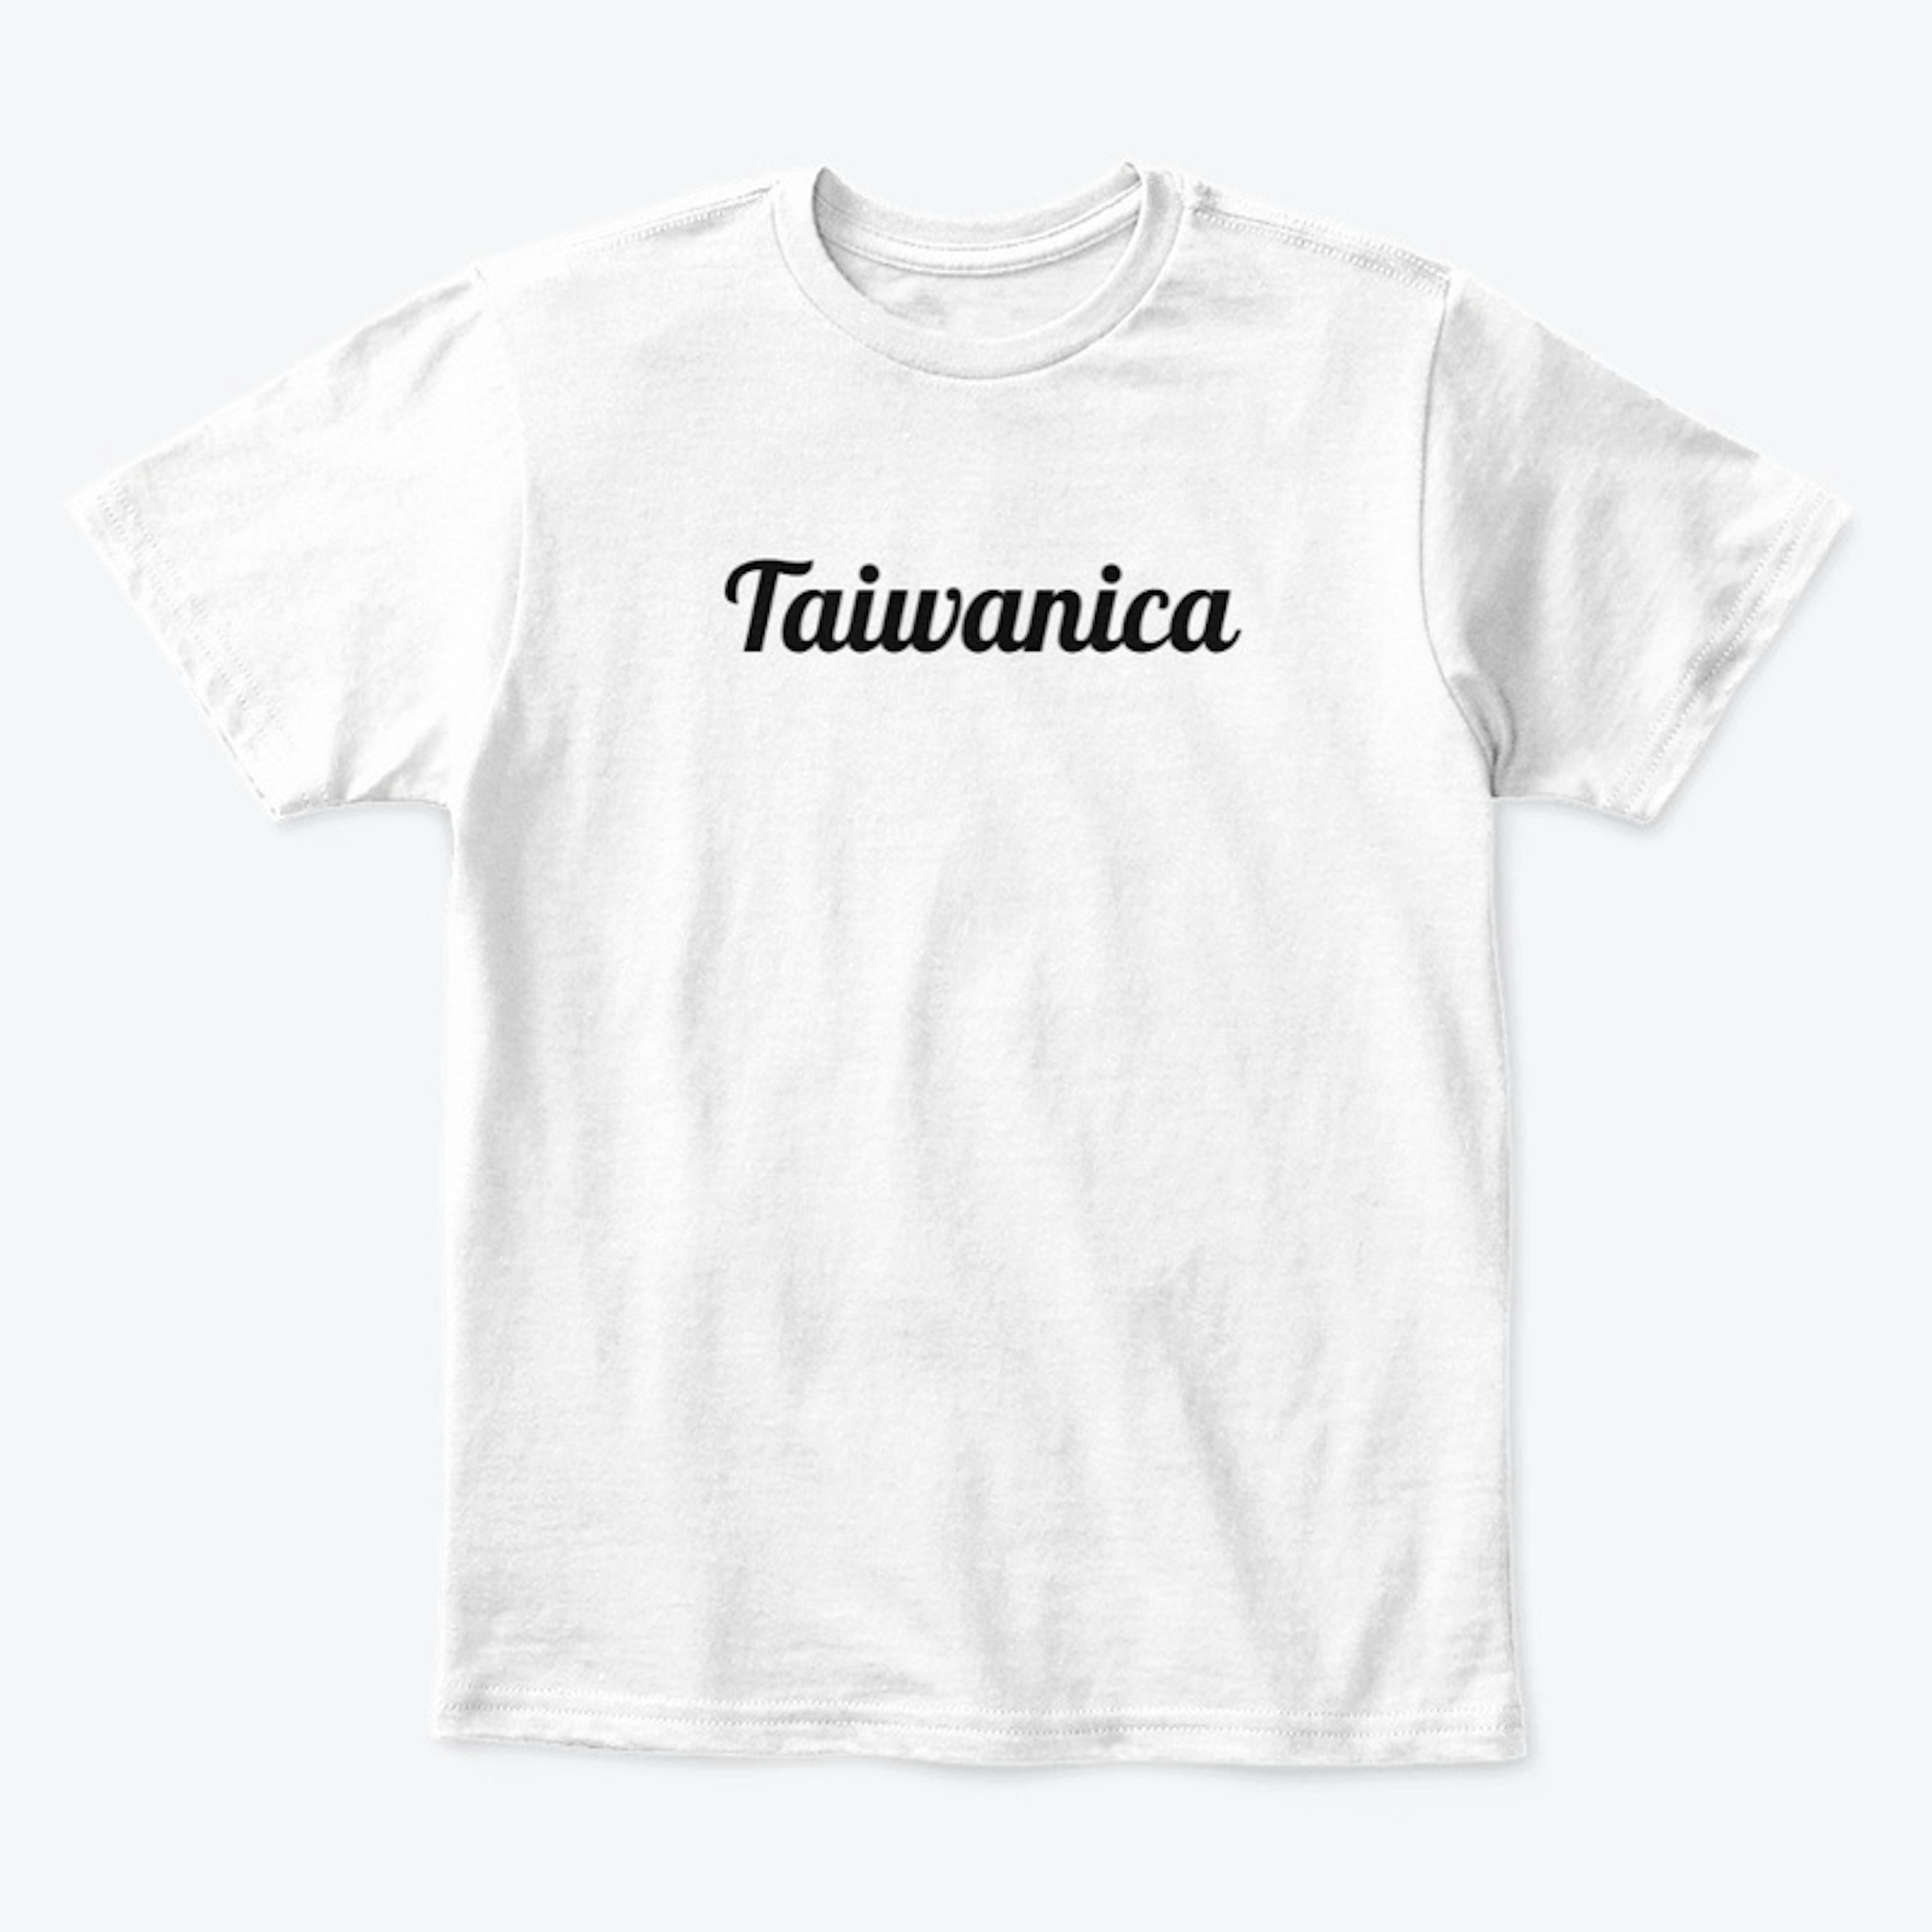 Taiwanica Shirts